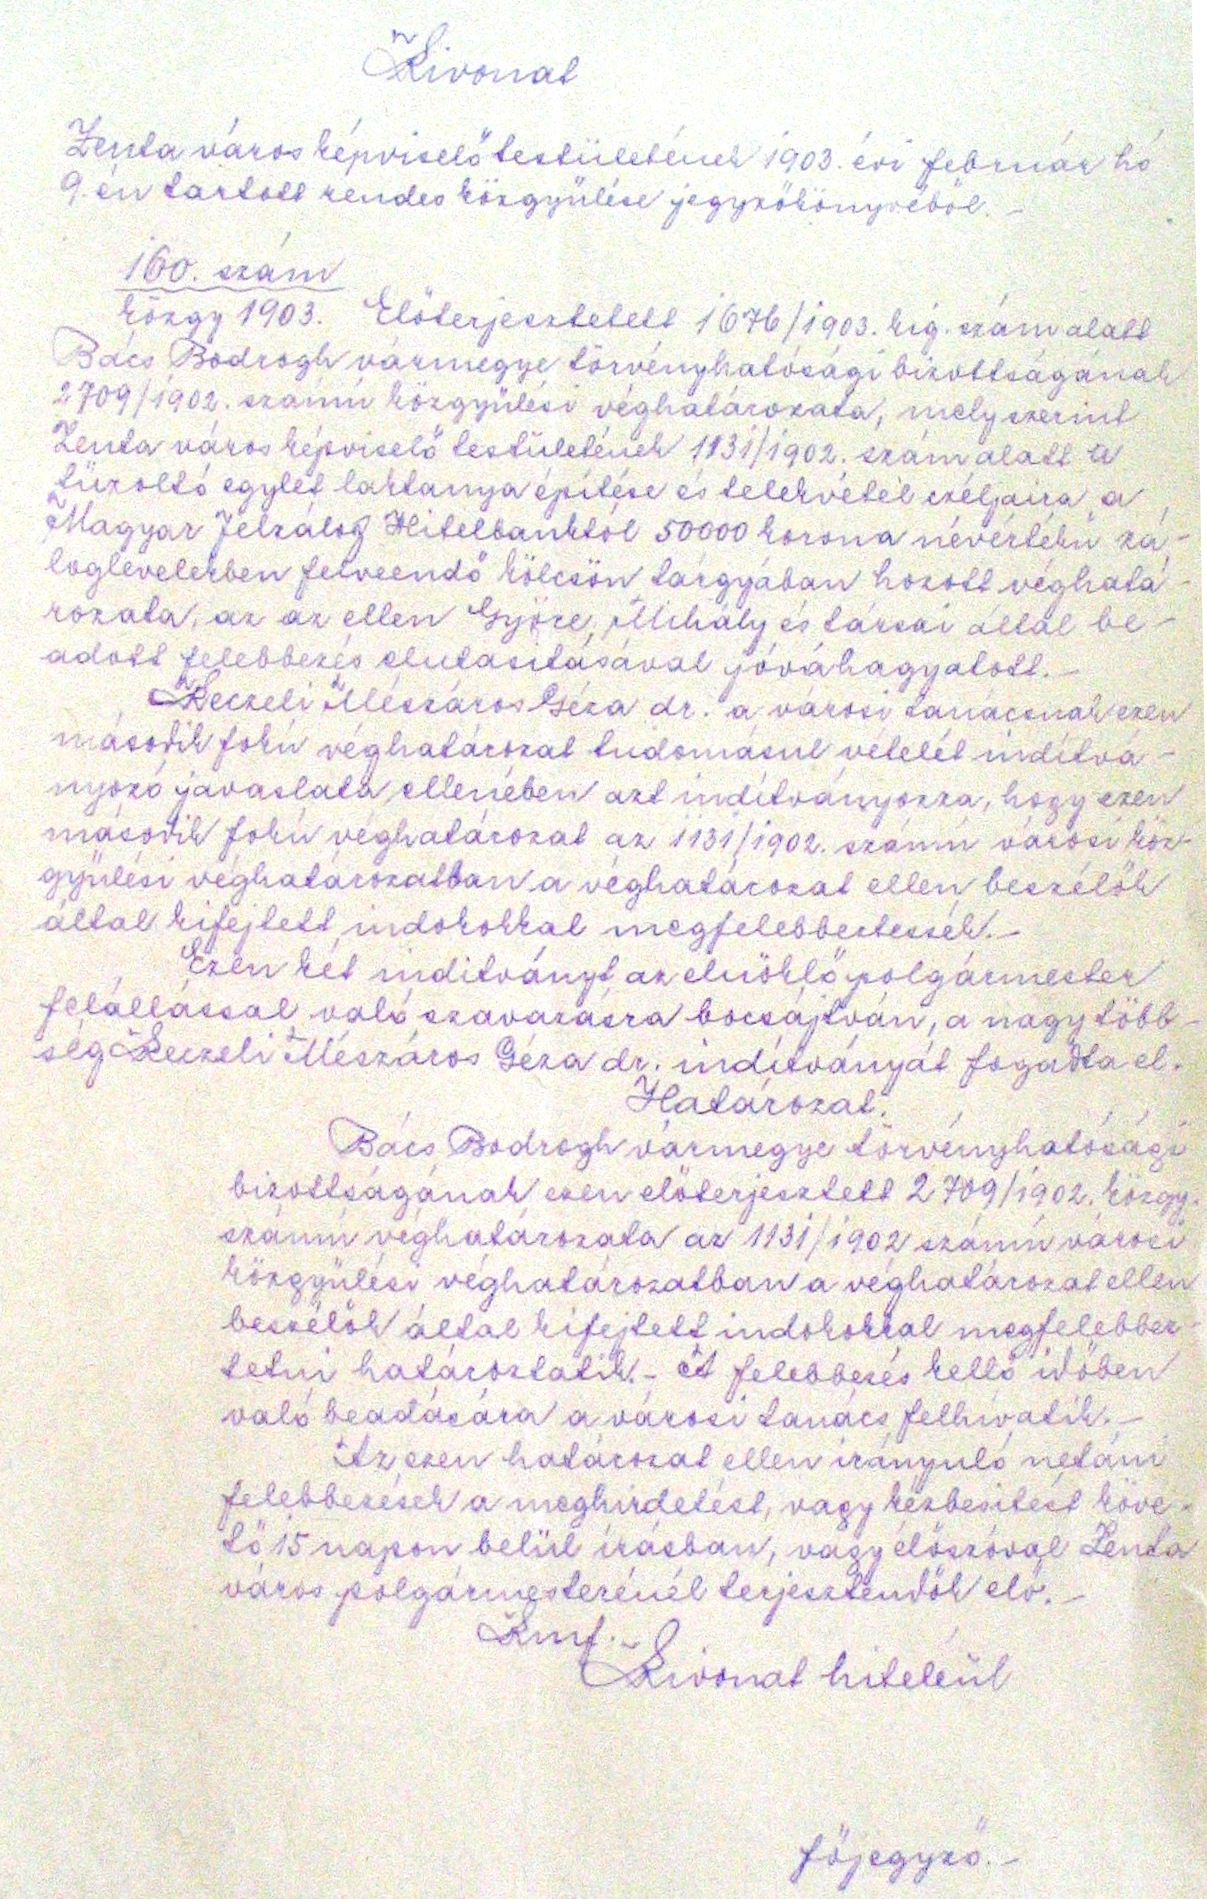 037_ZTL F.003.1 - Zentai Történelmi Levéltár.  Az Önkéntes Tűzoltó Testületre vonatkozó zentai városi tanácsi iratok gyűjteménye